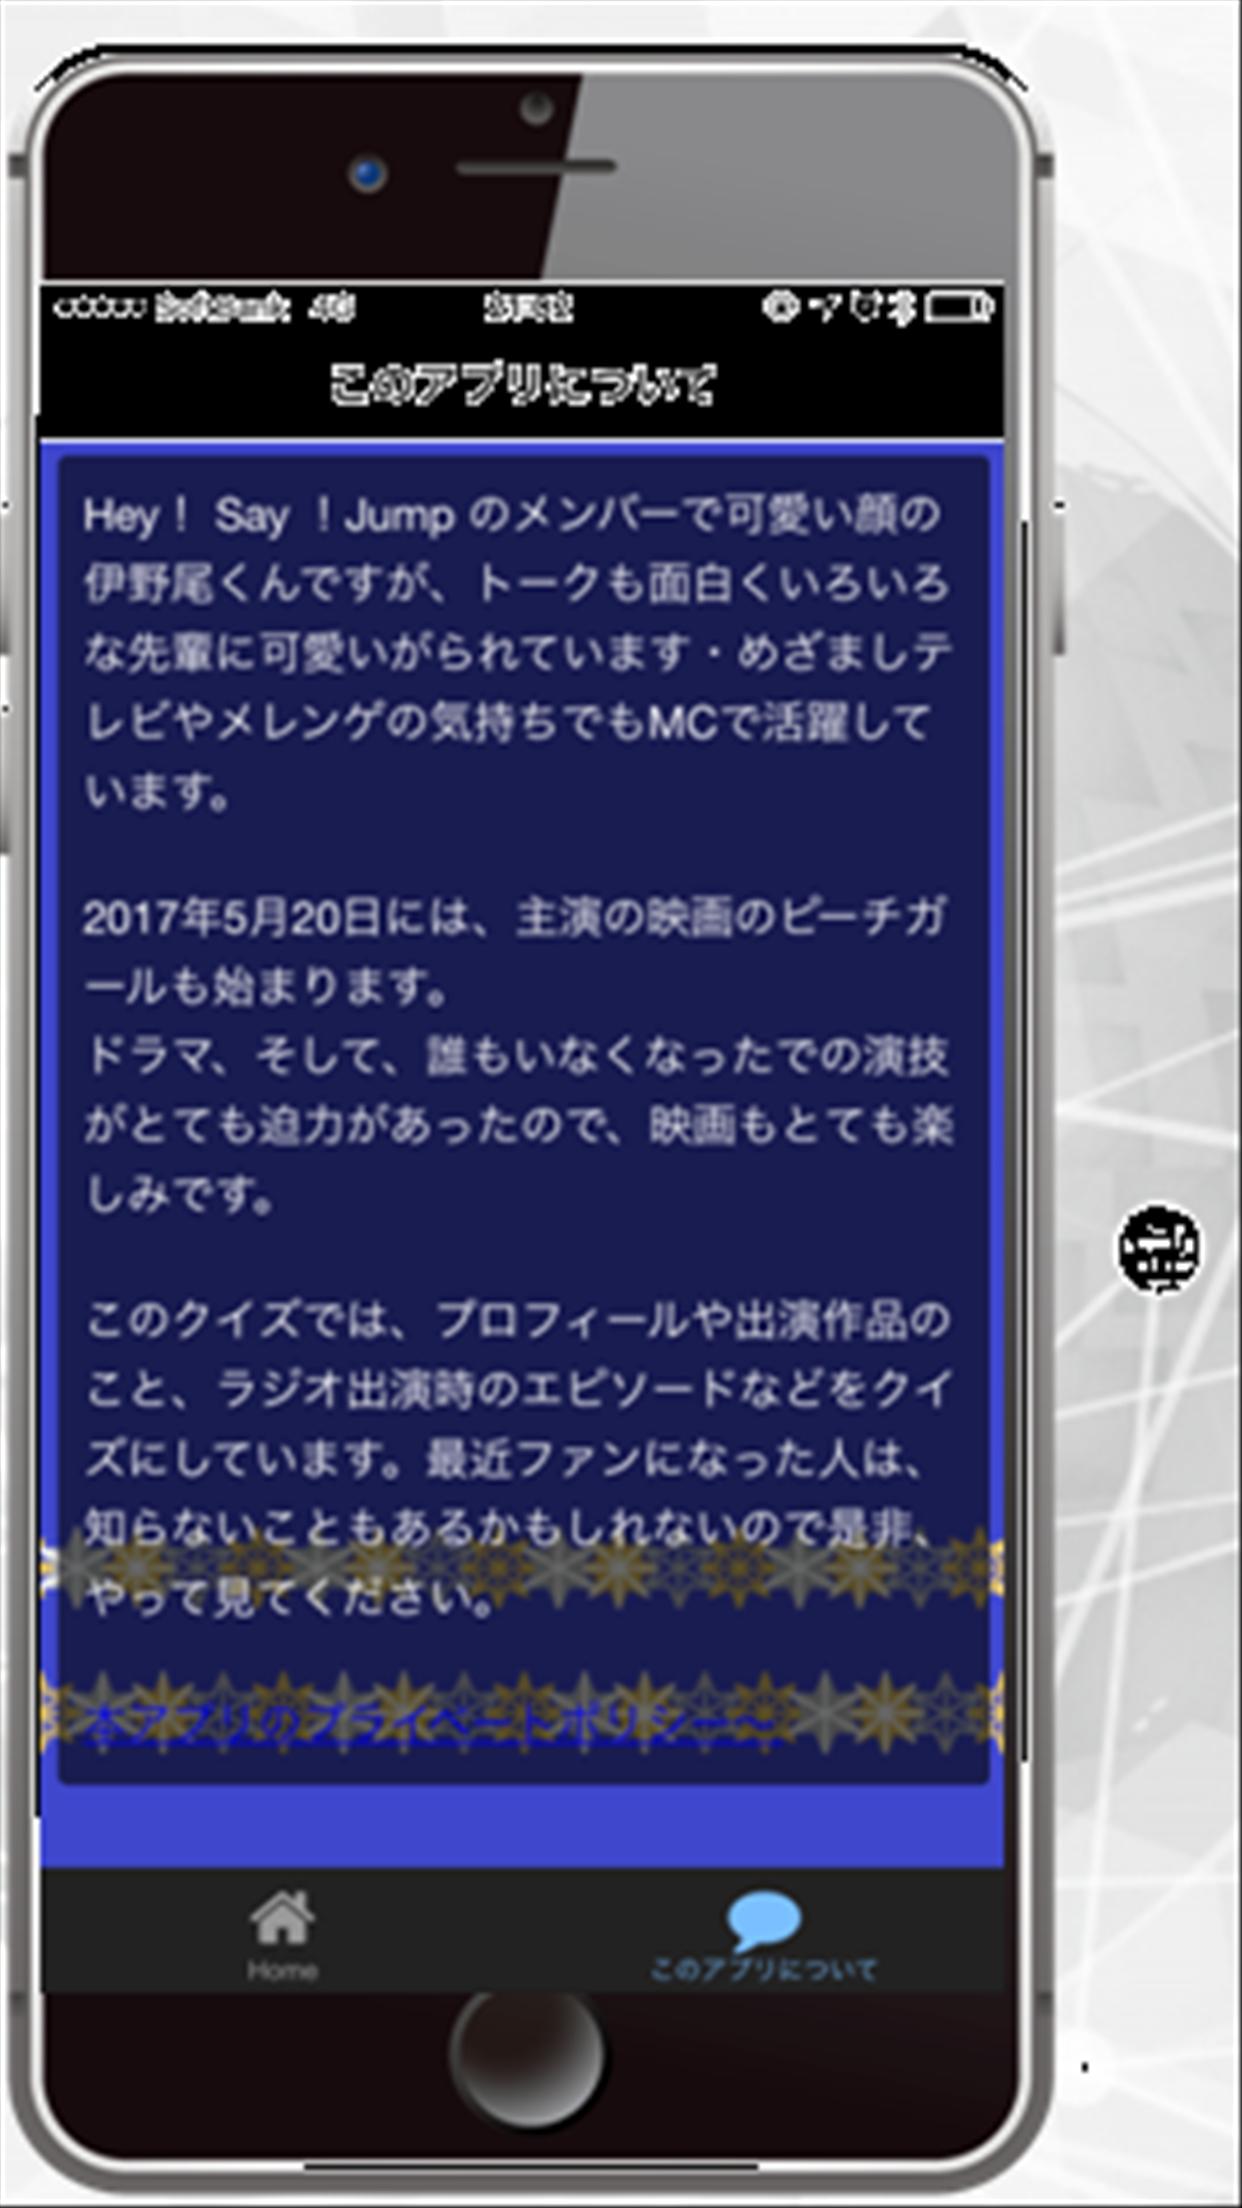 クイズ For 伊野尾ちゃんーhey Say Jump For Android Apk Download